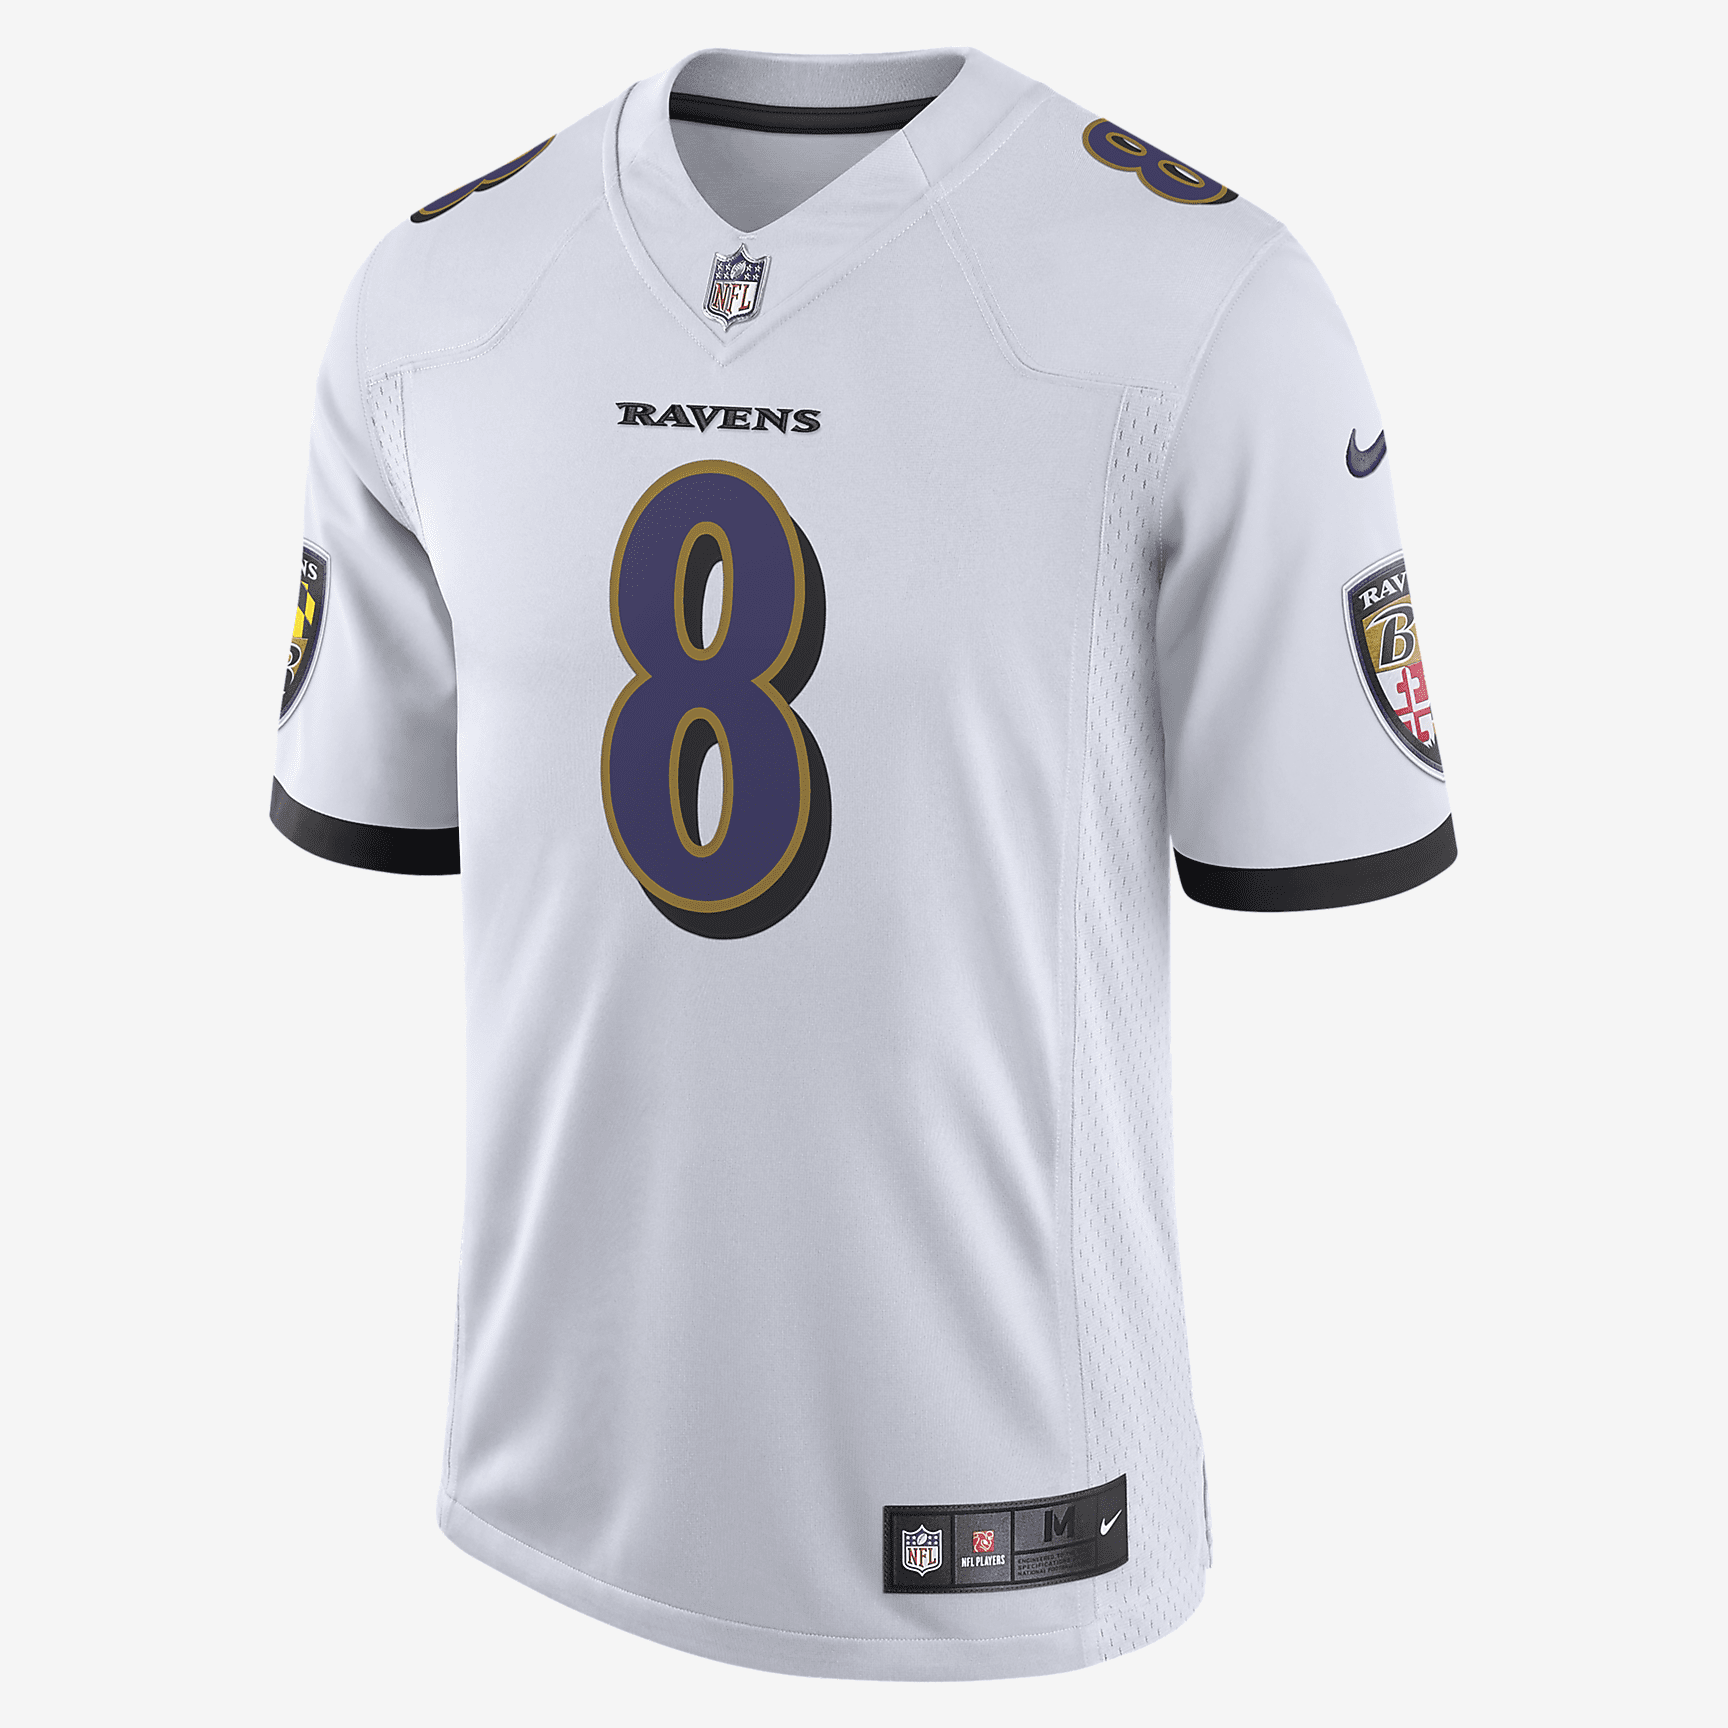 Baltimore Ravens Nike Football Jersey 